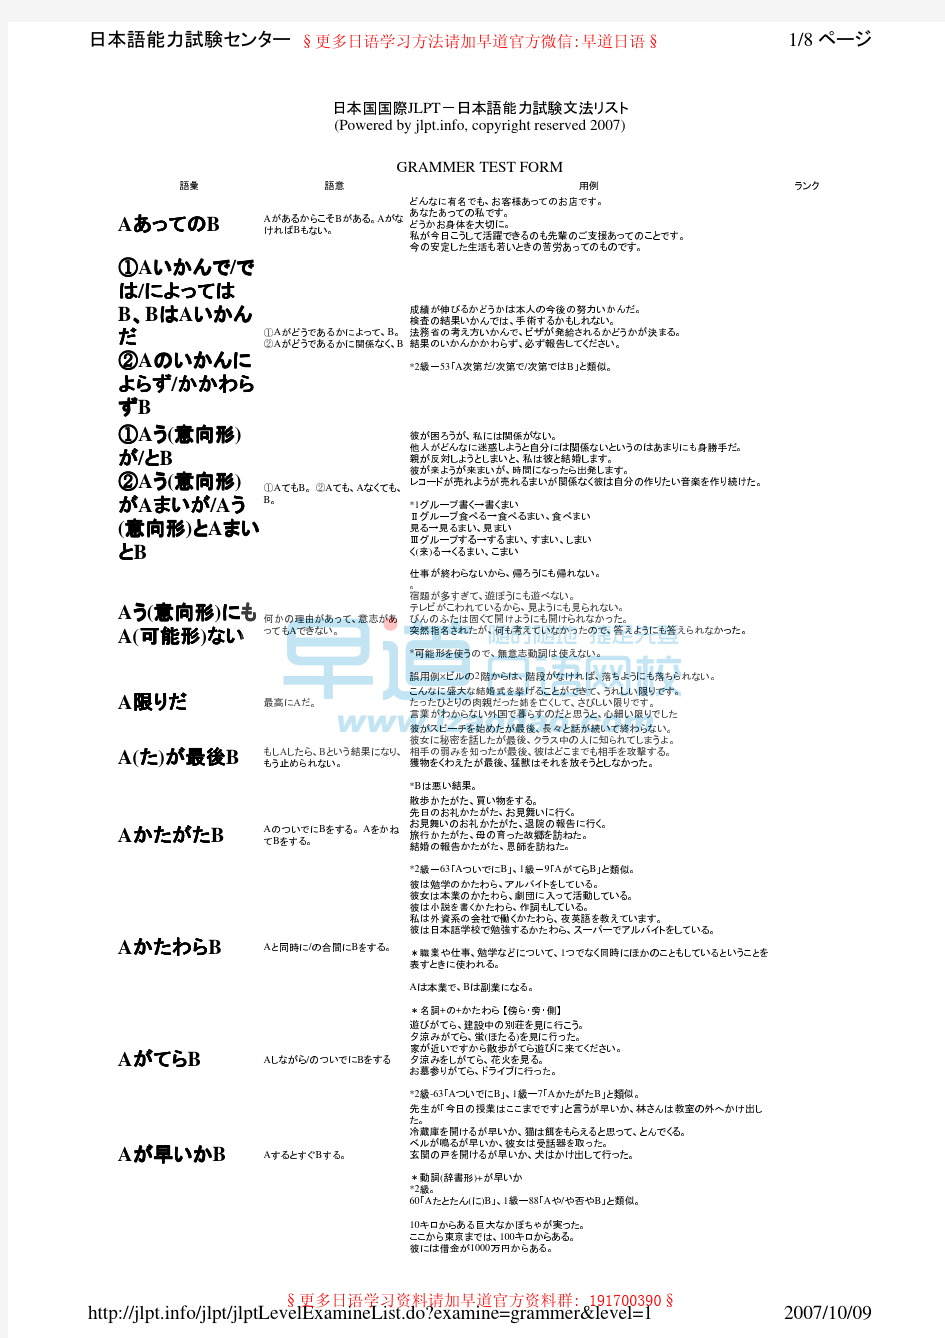 日语一级语法总览(日语能力考试中心官方资料)(推荐)